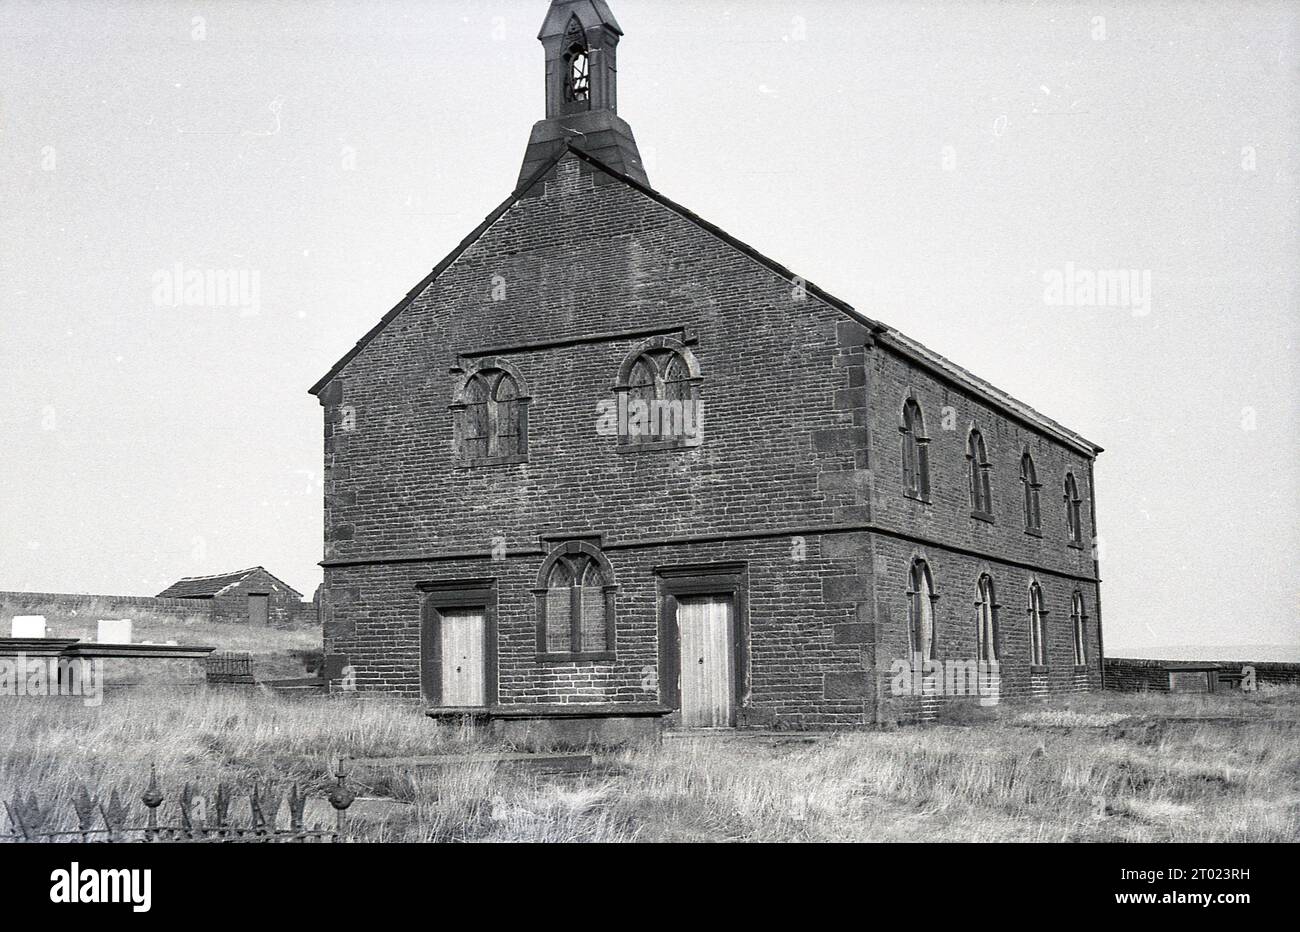 Années 1960, historique, une église sur les landes de flanc de colline au-dessus d'Oldham, près de Saddleworth Moor, Angleterre, Royaume-Uni. Banque D'Images